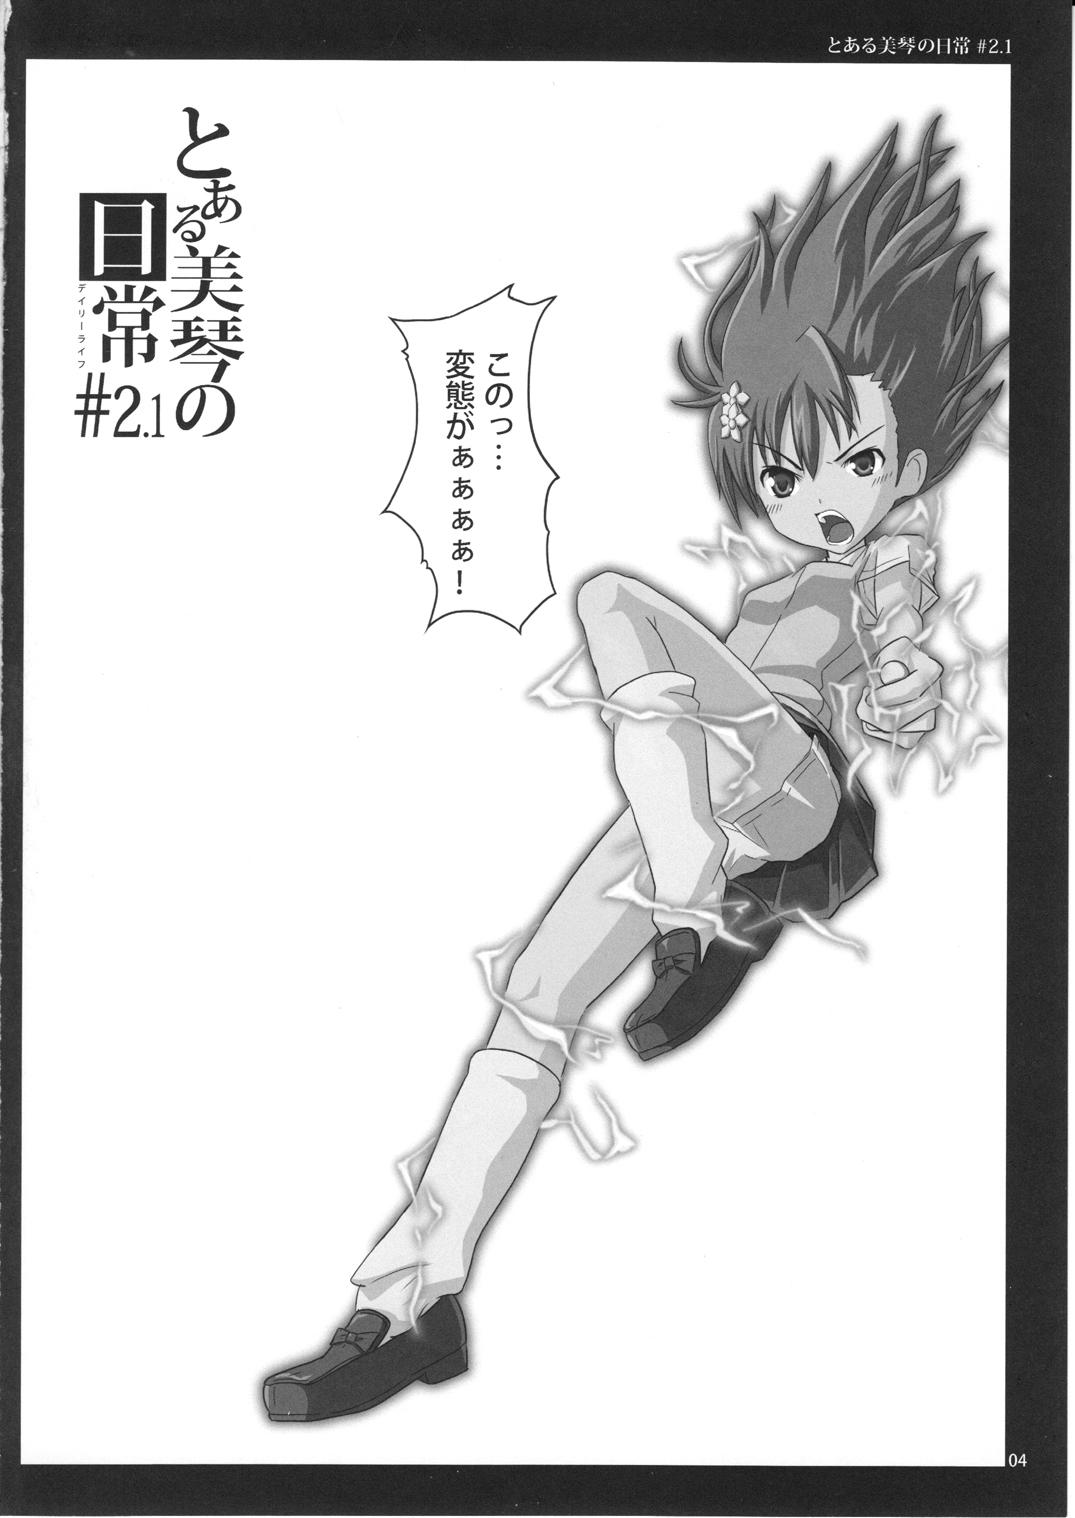 Str8 To Aru Mikoto no Nichijou 2.1 - Toaru kagaku no railgun Huge Dick - Page 4